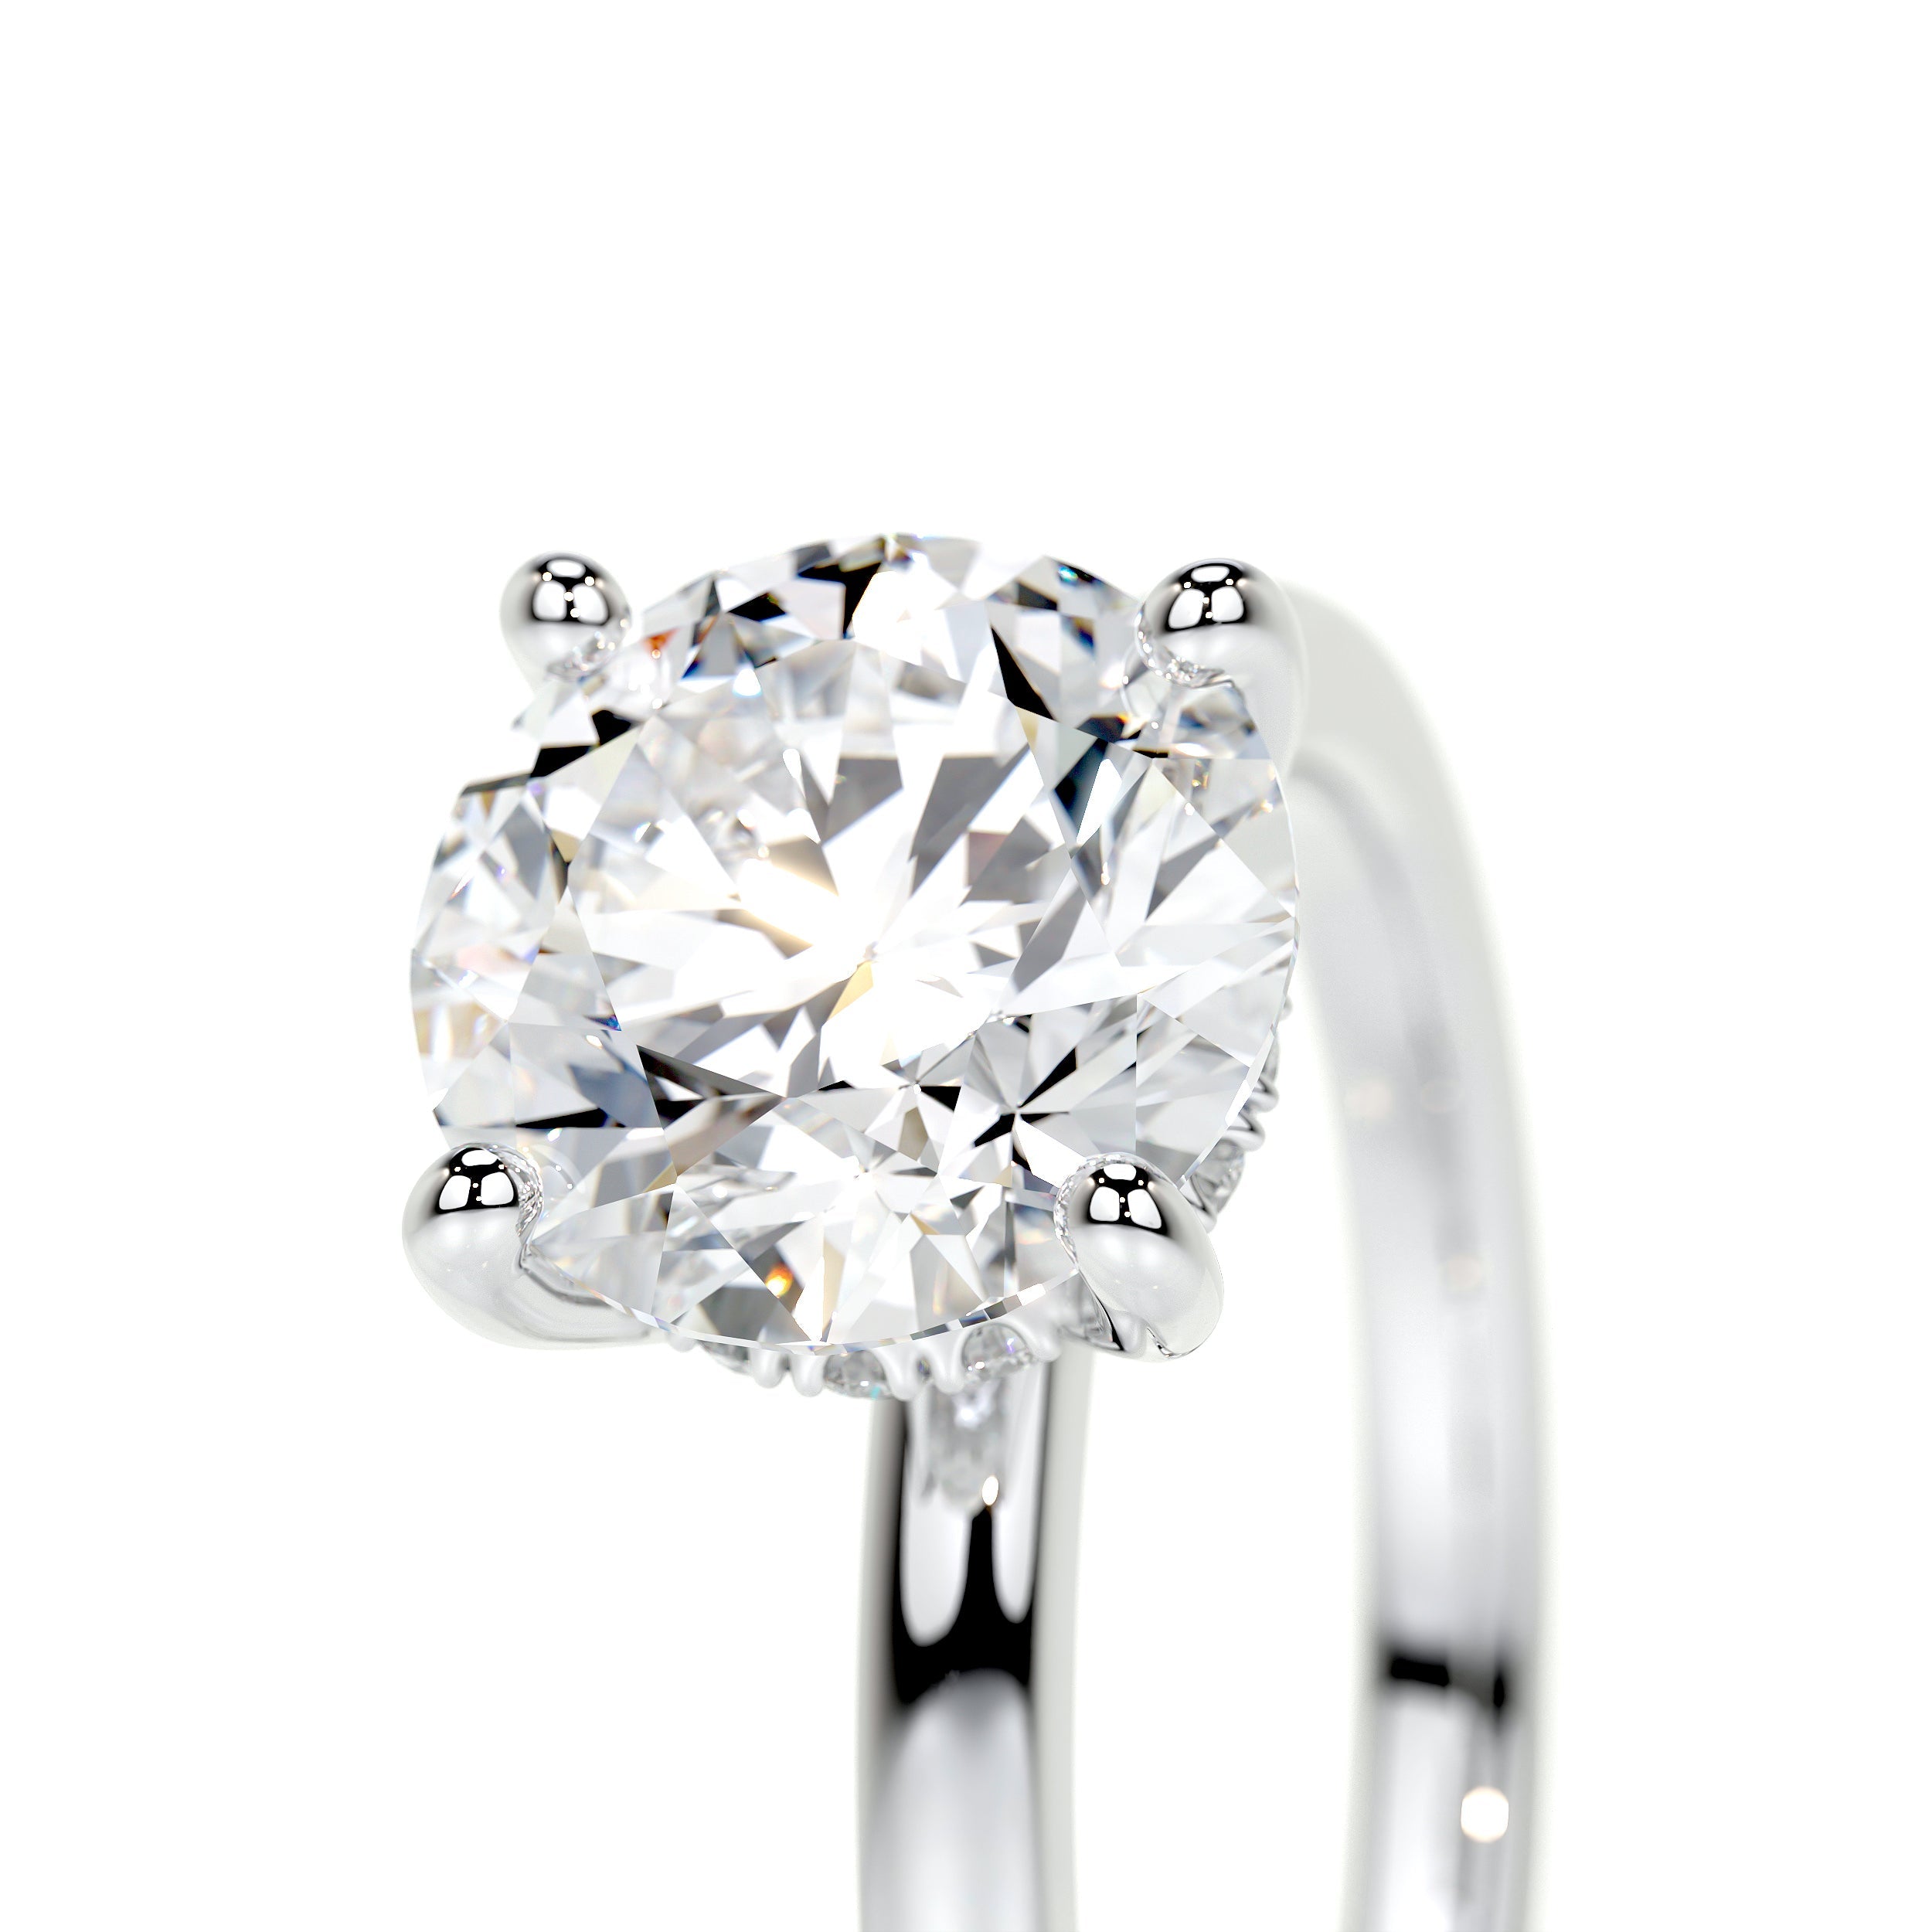 Cynthia Lab Grown Diamond Ring   (2.1 Carat) -14K White Gold